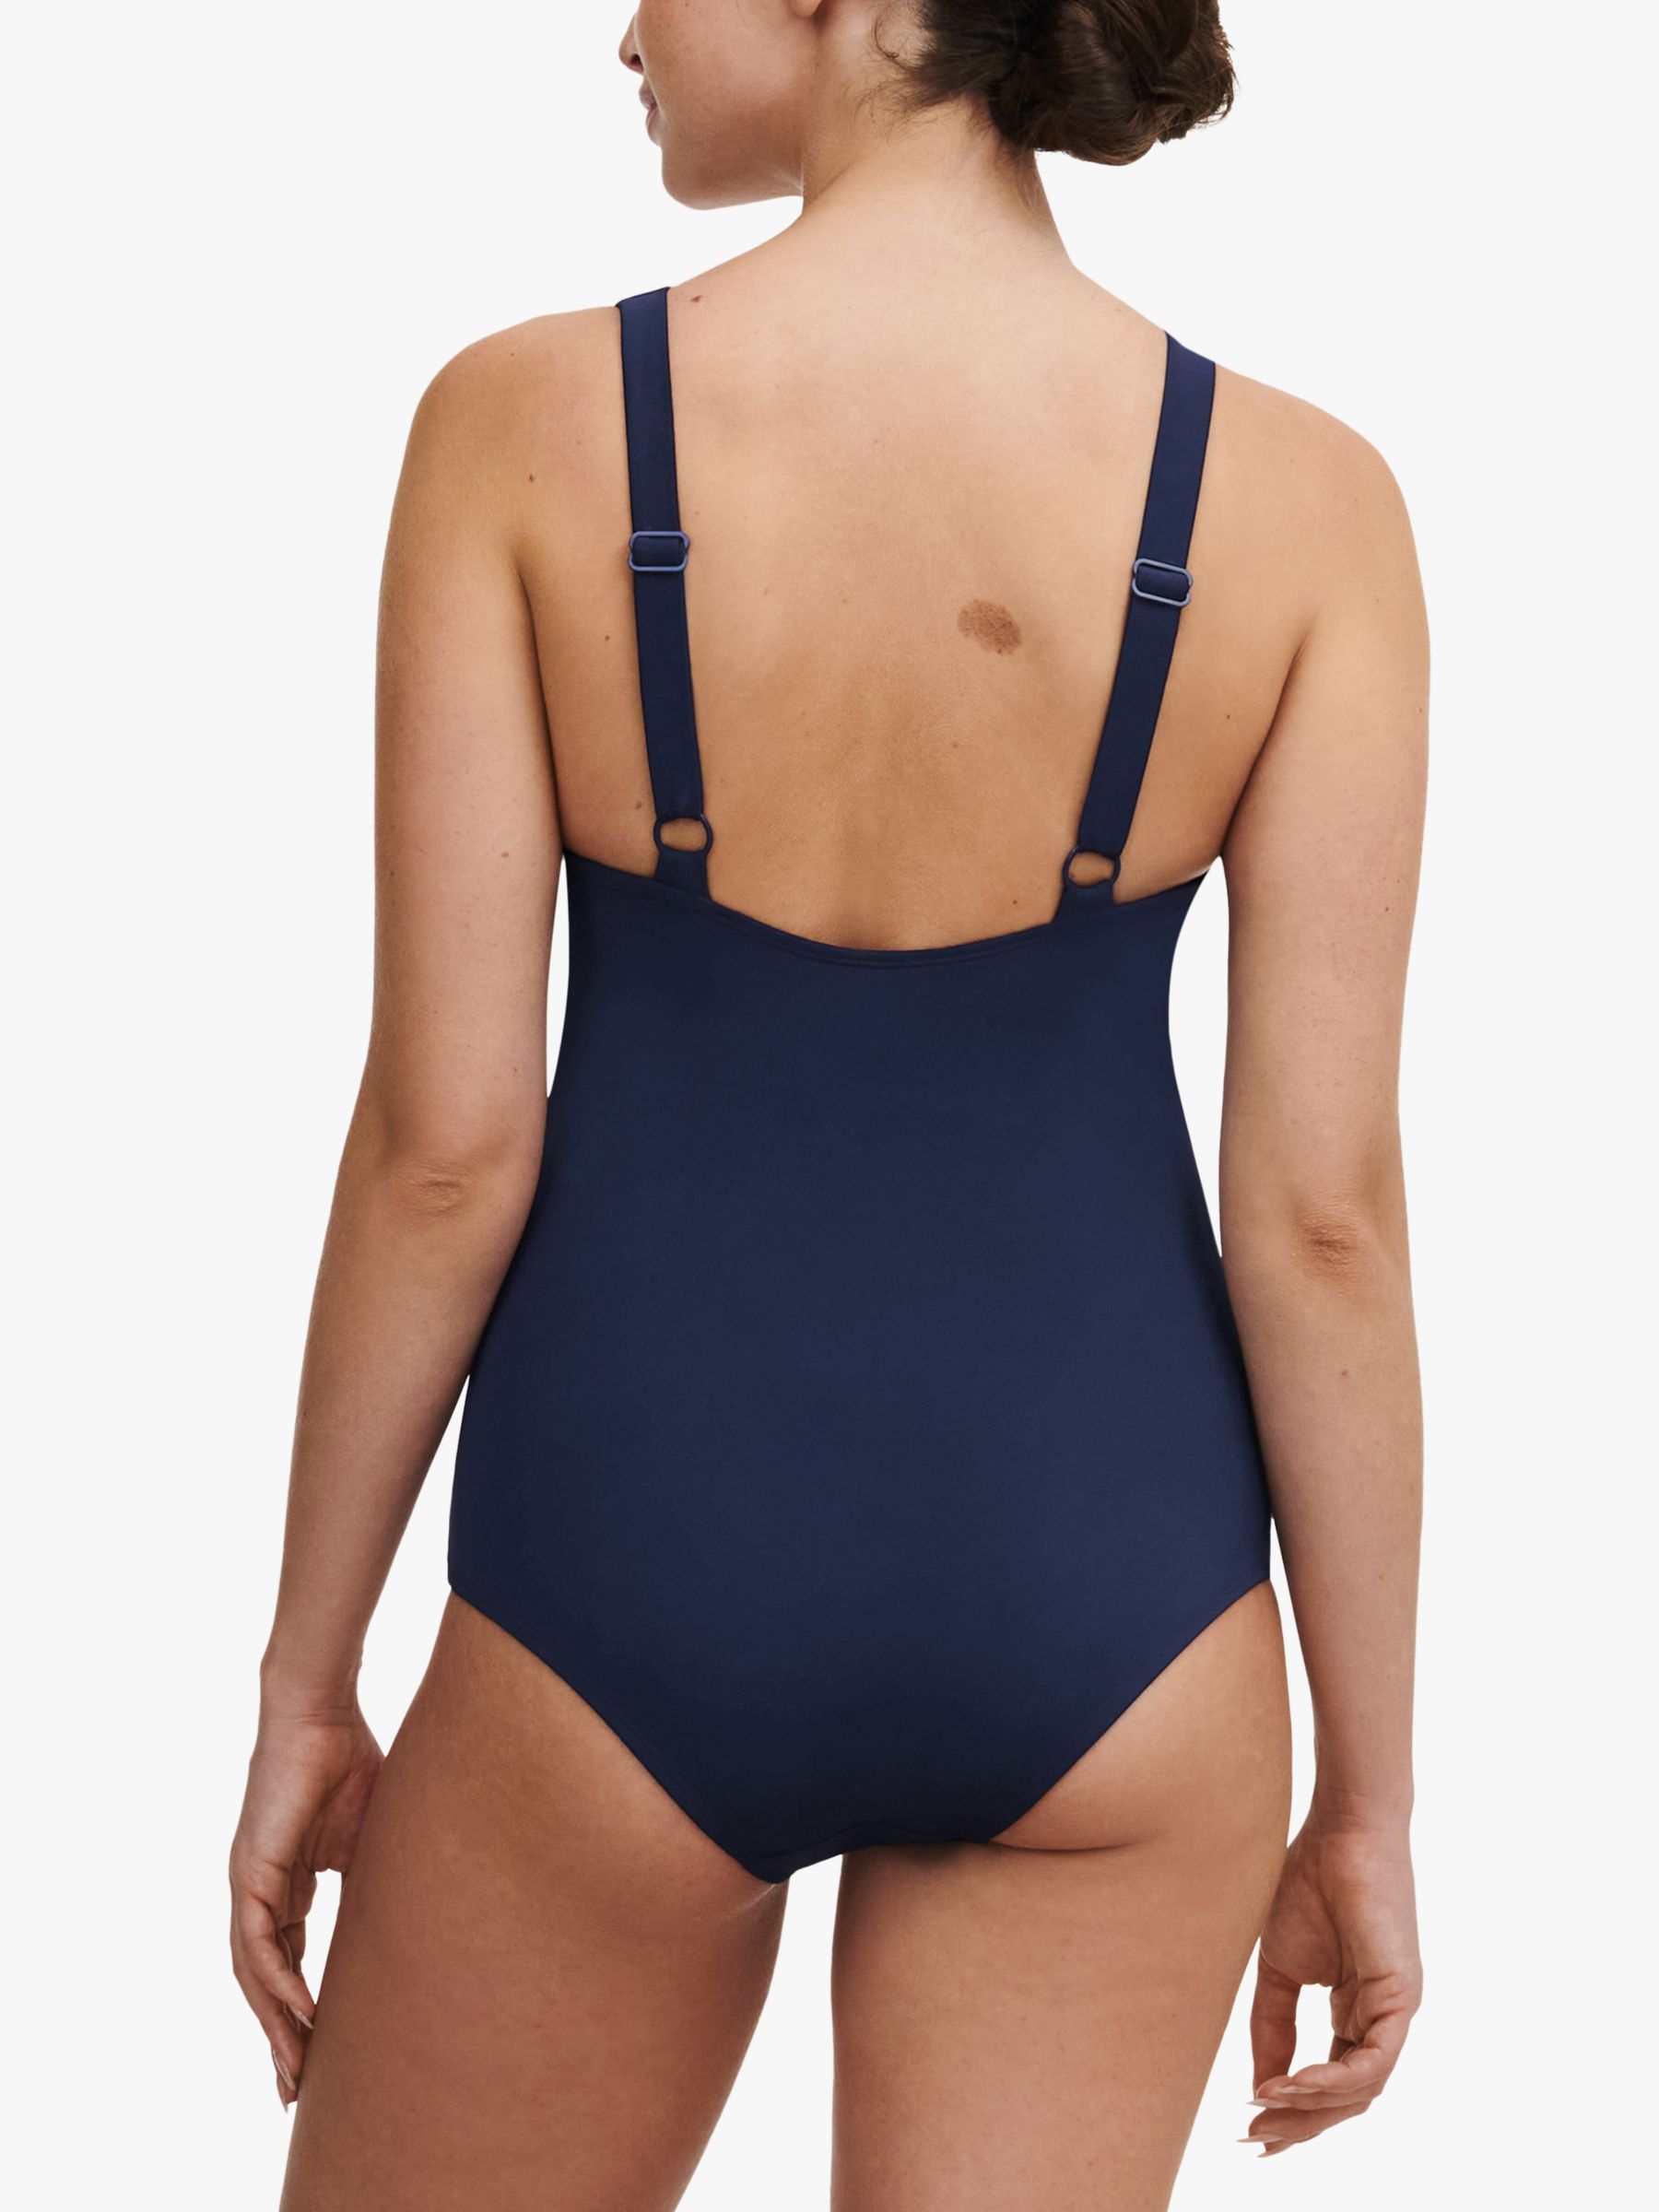 Femilet Rivero Plunge Neck Buckle Detail Swimsuit, Nocturnal Blue, S